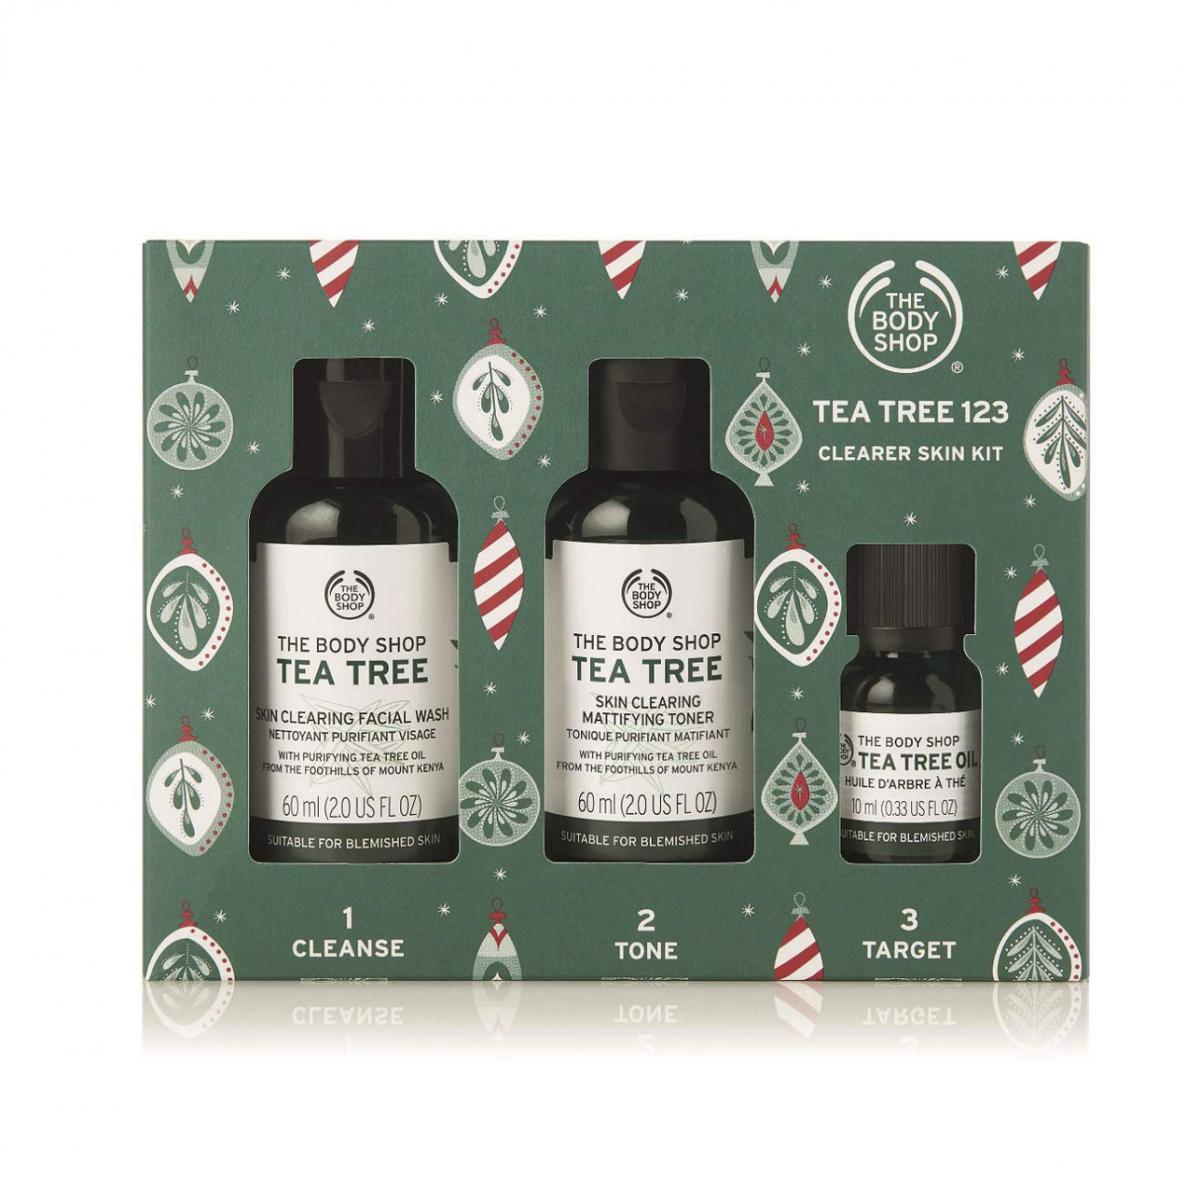 ست پاک کننده پوست چرب تی تری - The Body Shop Tea Tree 123 Clearer Skin Kit